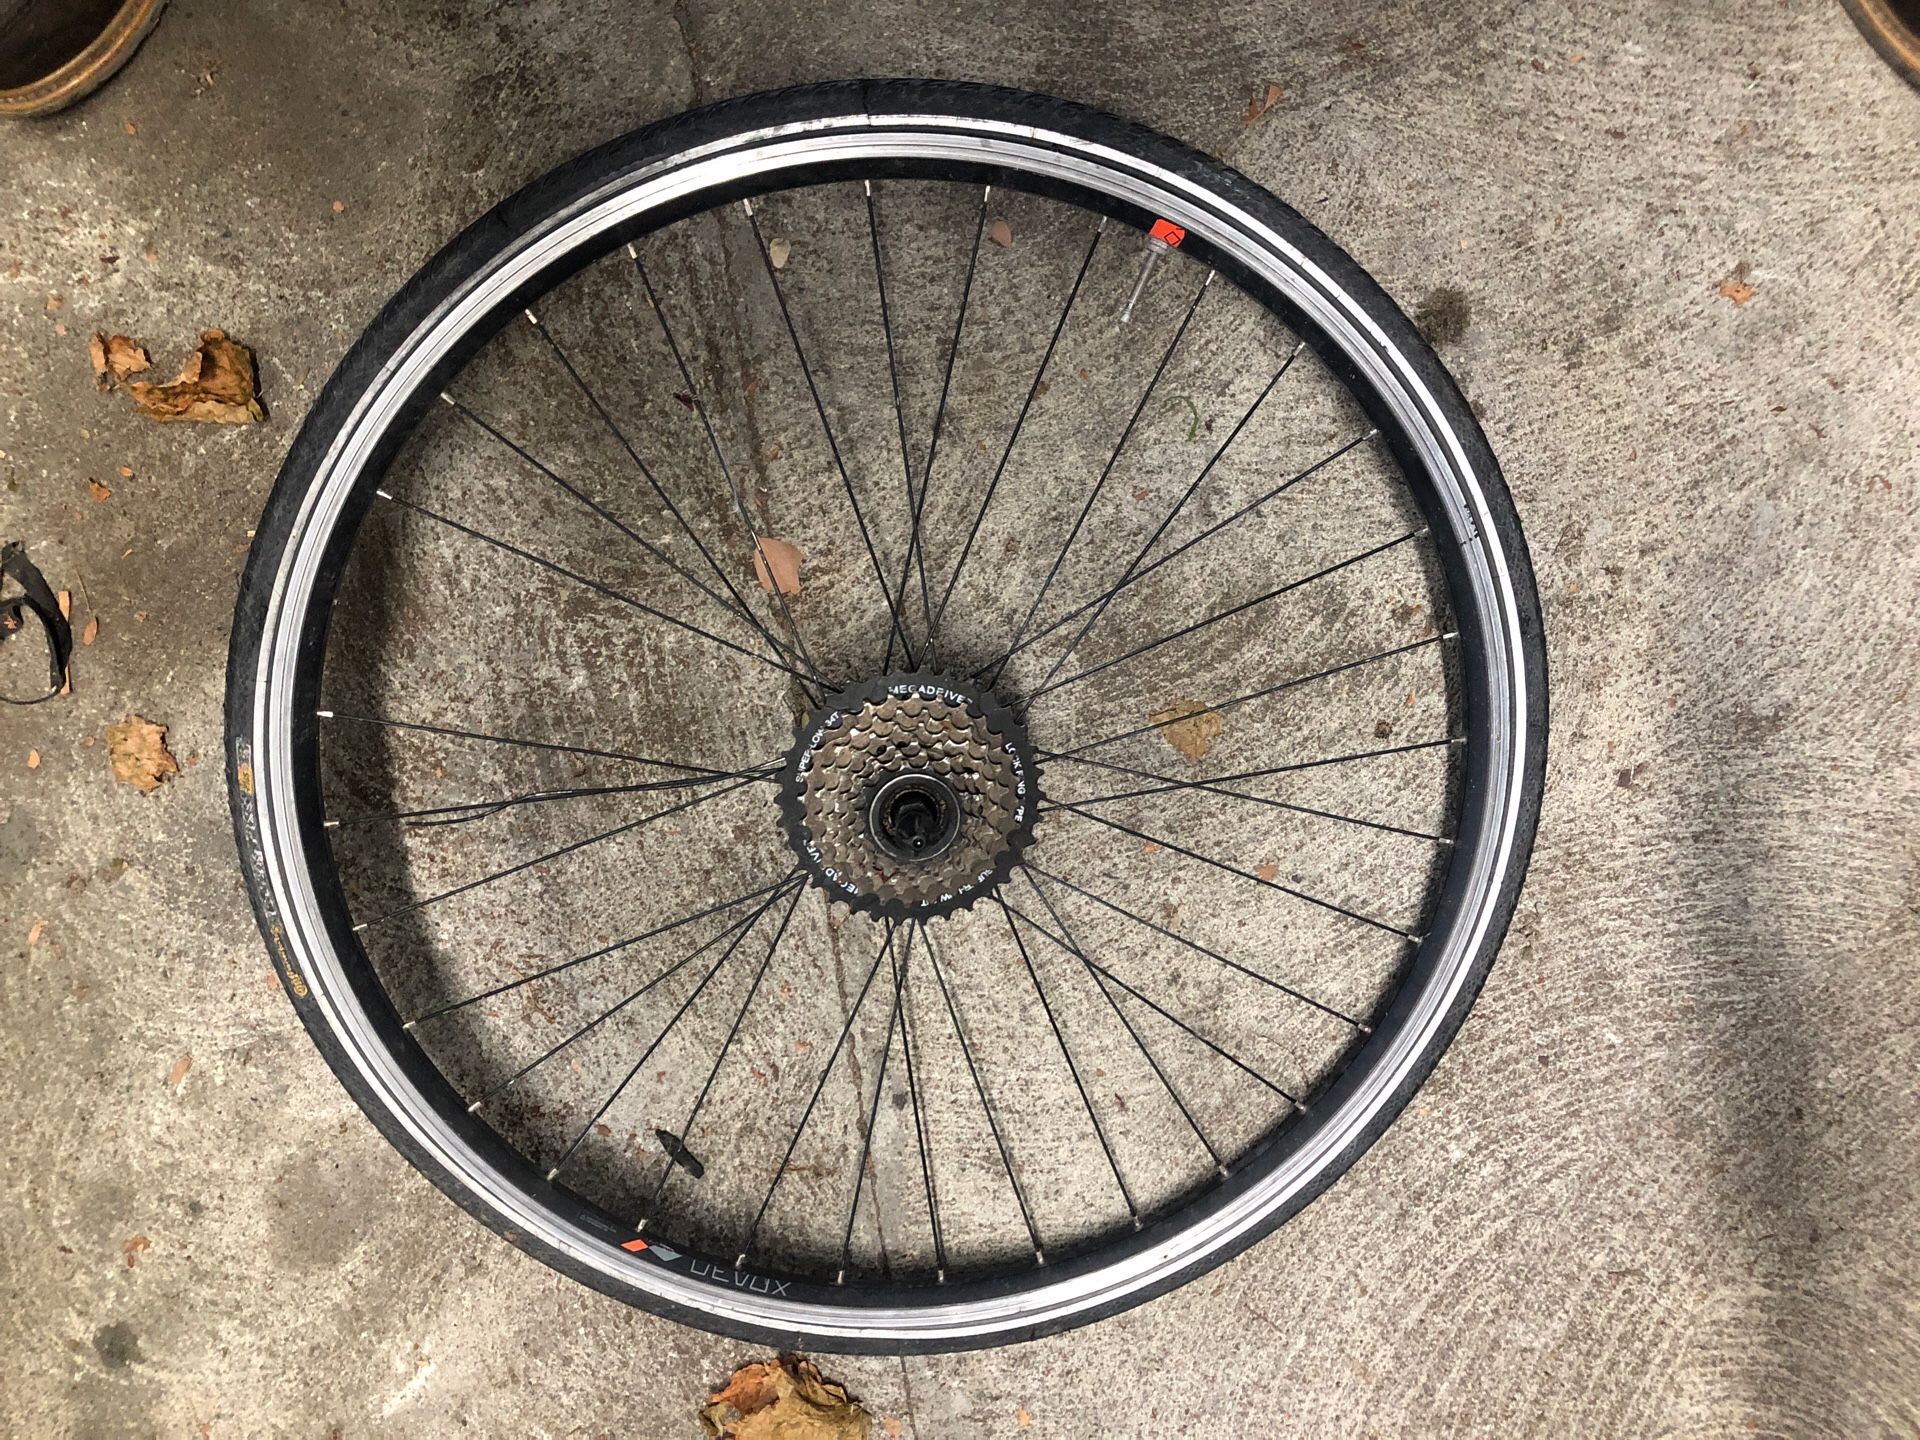 High end bicycle wheels off TREK bike